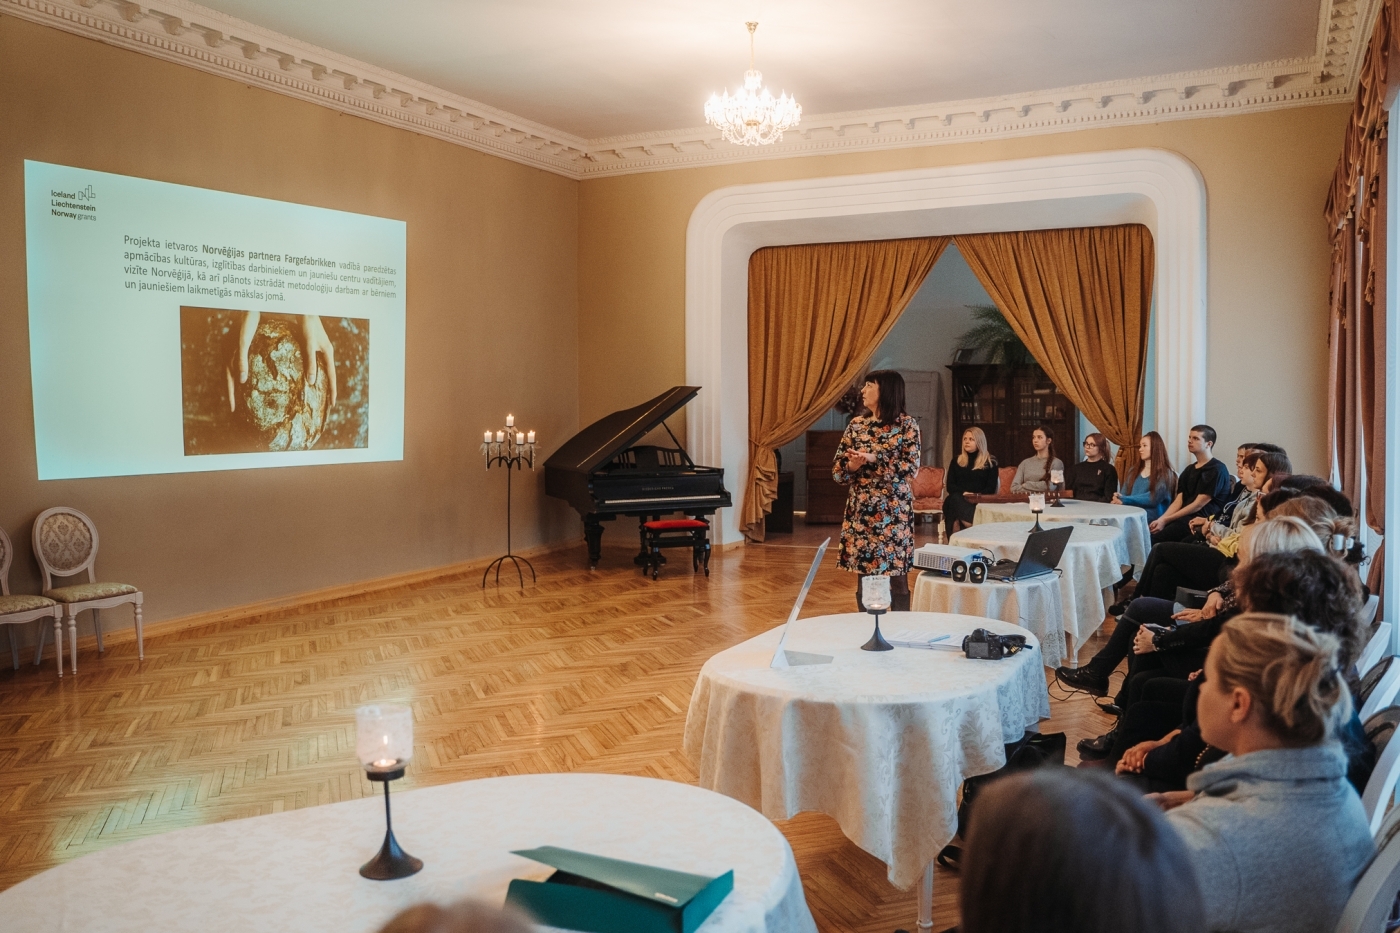 Jelgavas novadā atklāts projekts “Kultūraugs”